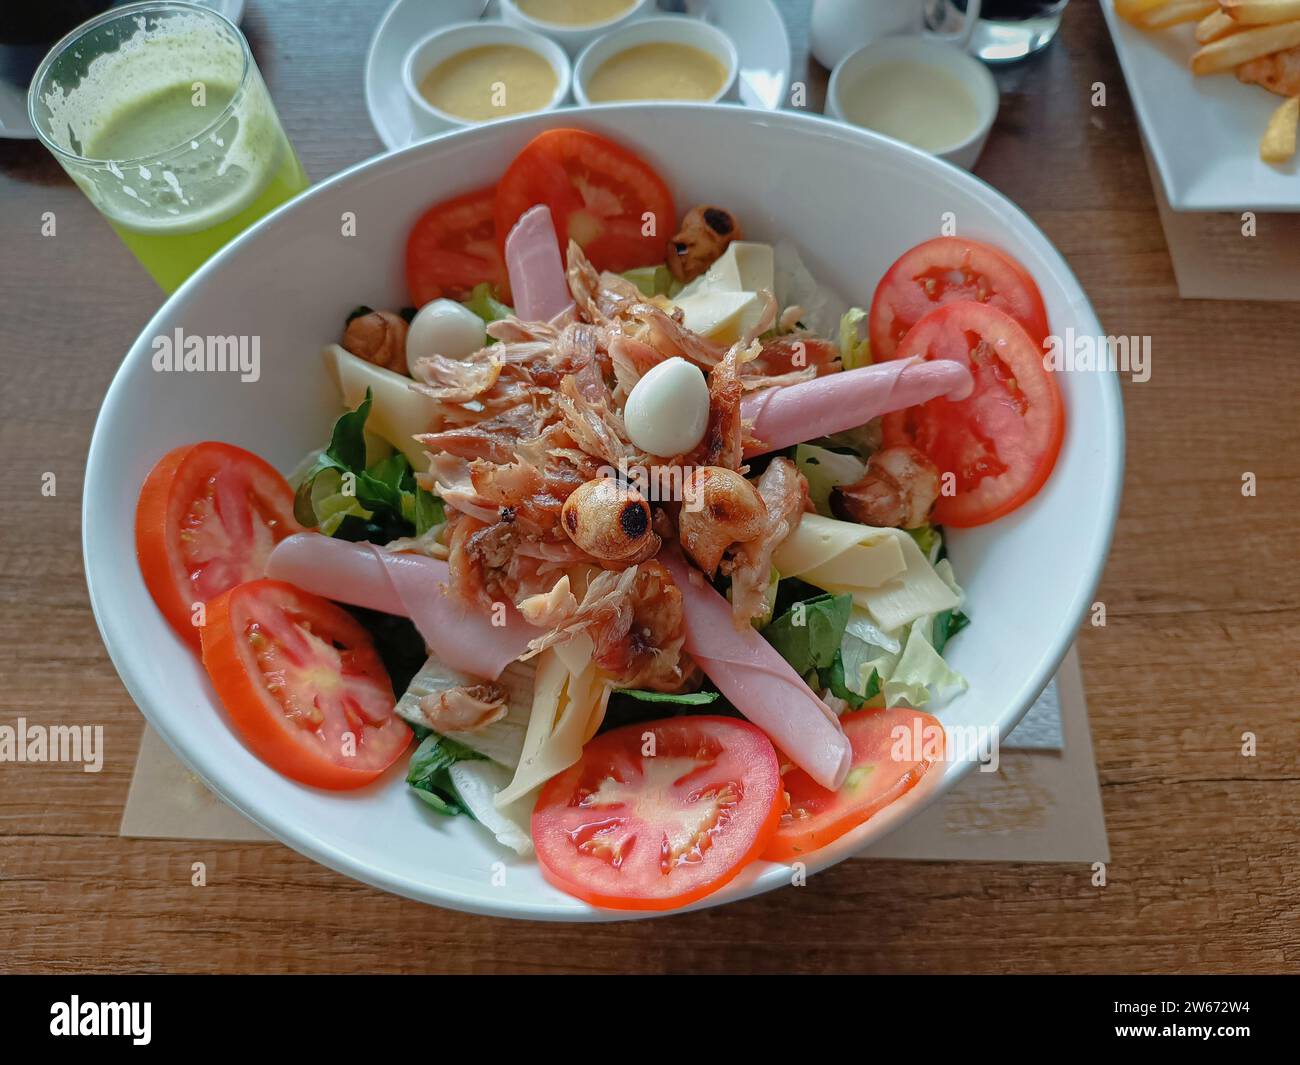 Salade fraîche décorée de poulet grillé, jambon, fromage, champignons et œufs de caille sur une assiette blanche profonde Banque D'Images